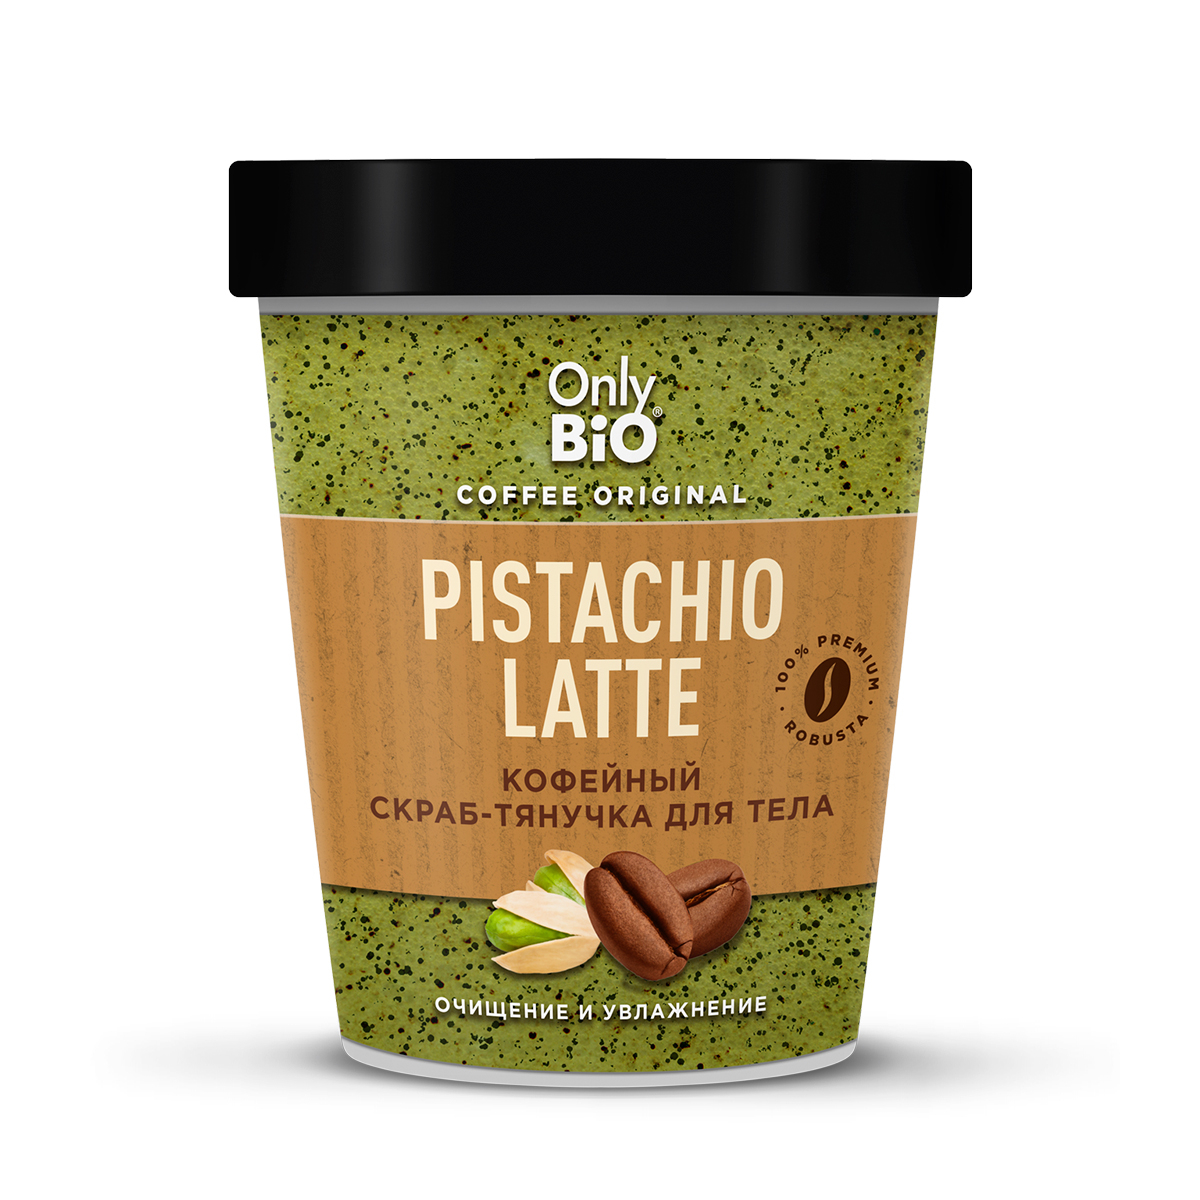 Скраб-тянучка для тела Only Bio Coffee Original Pistachio Latte кофейный, 230 мл kopusha скраб тянучка для тела хотеть не вредно 250